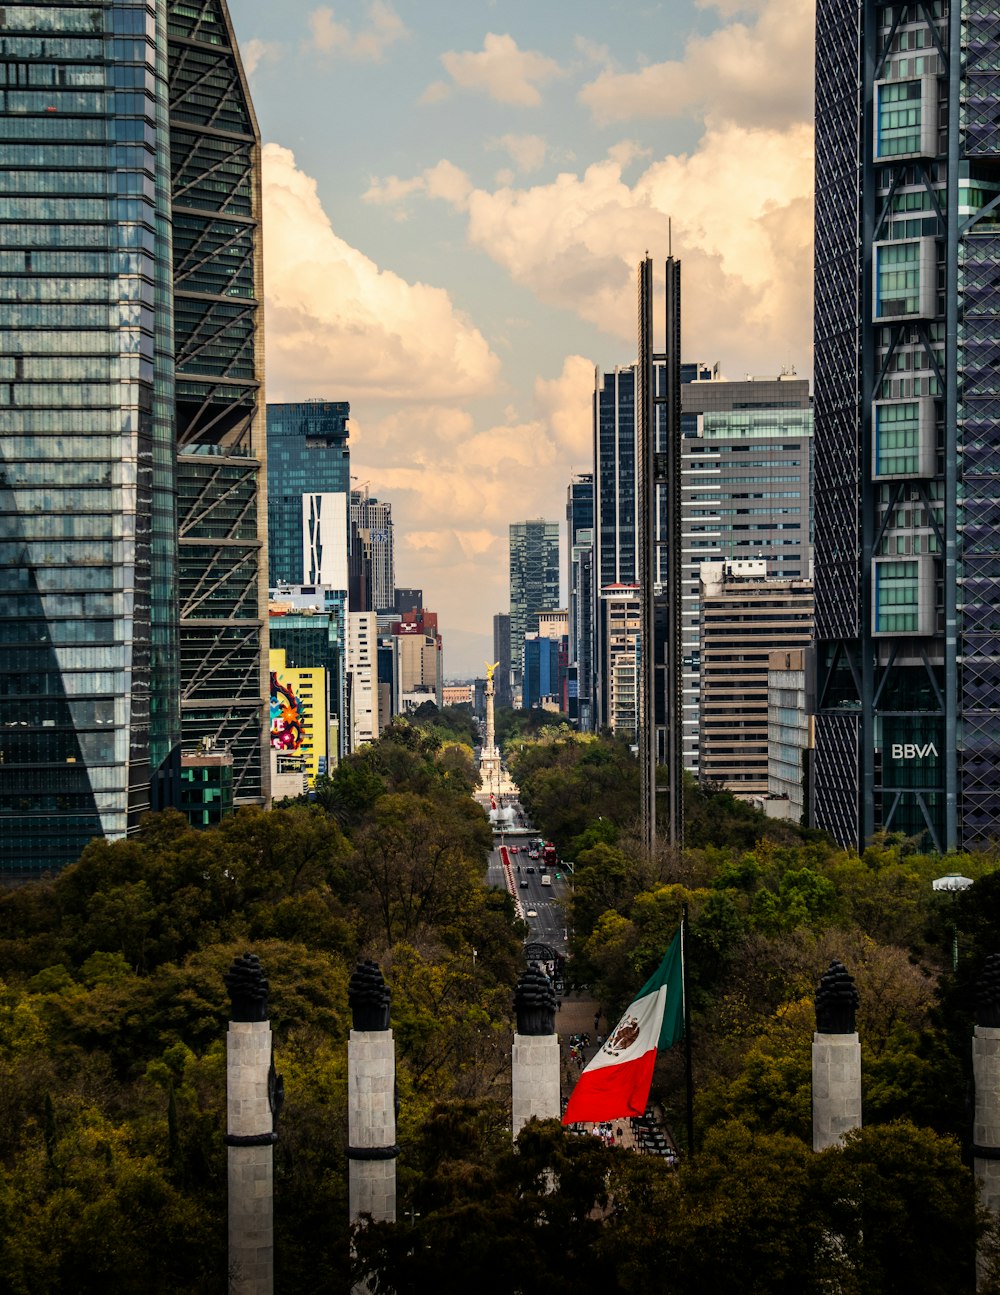 Una vista di una città con edifici alti e una bandiera in primo piano